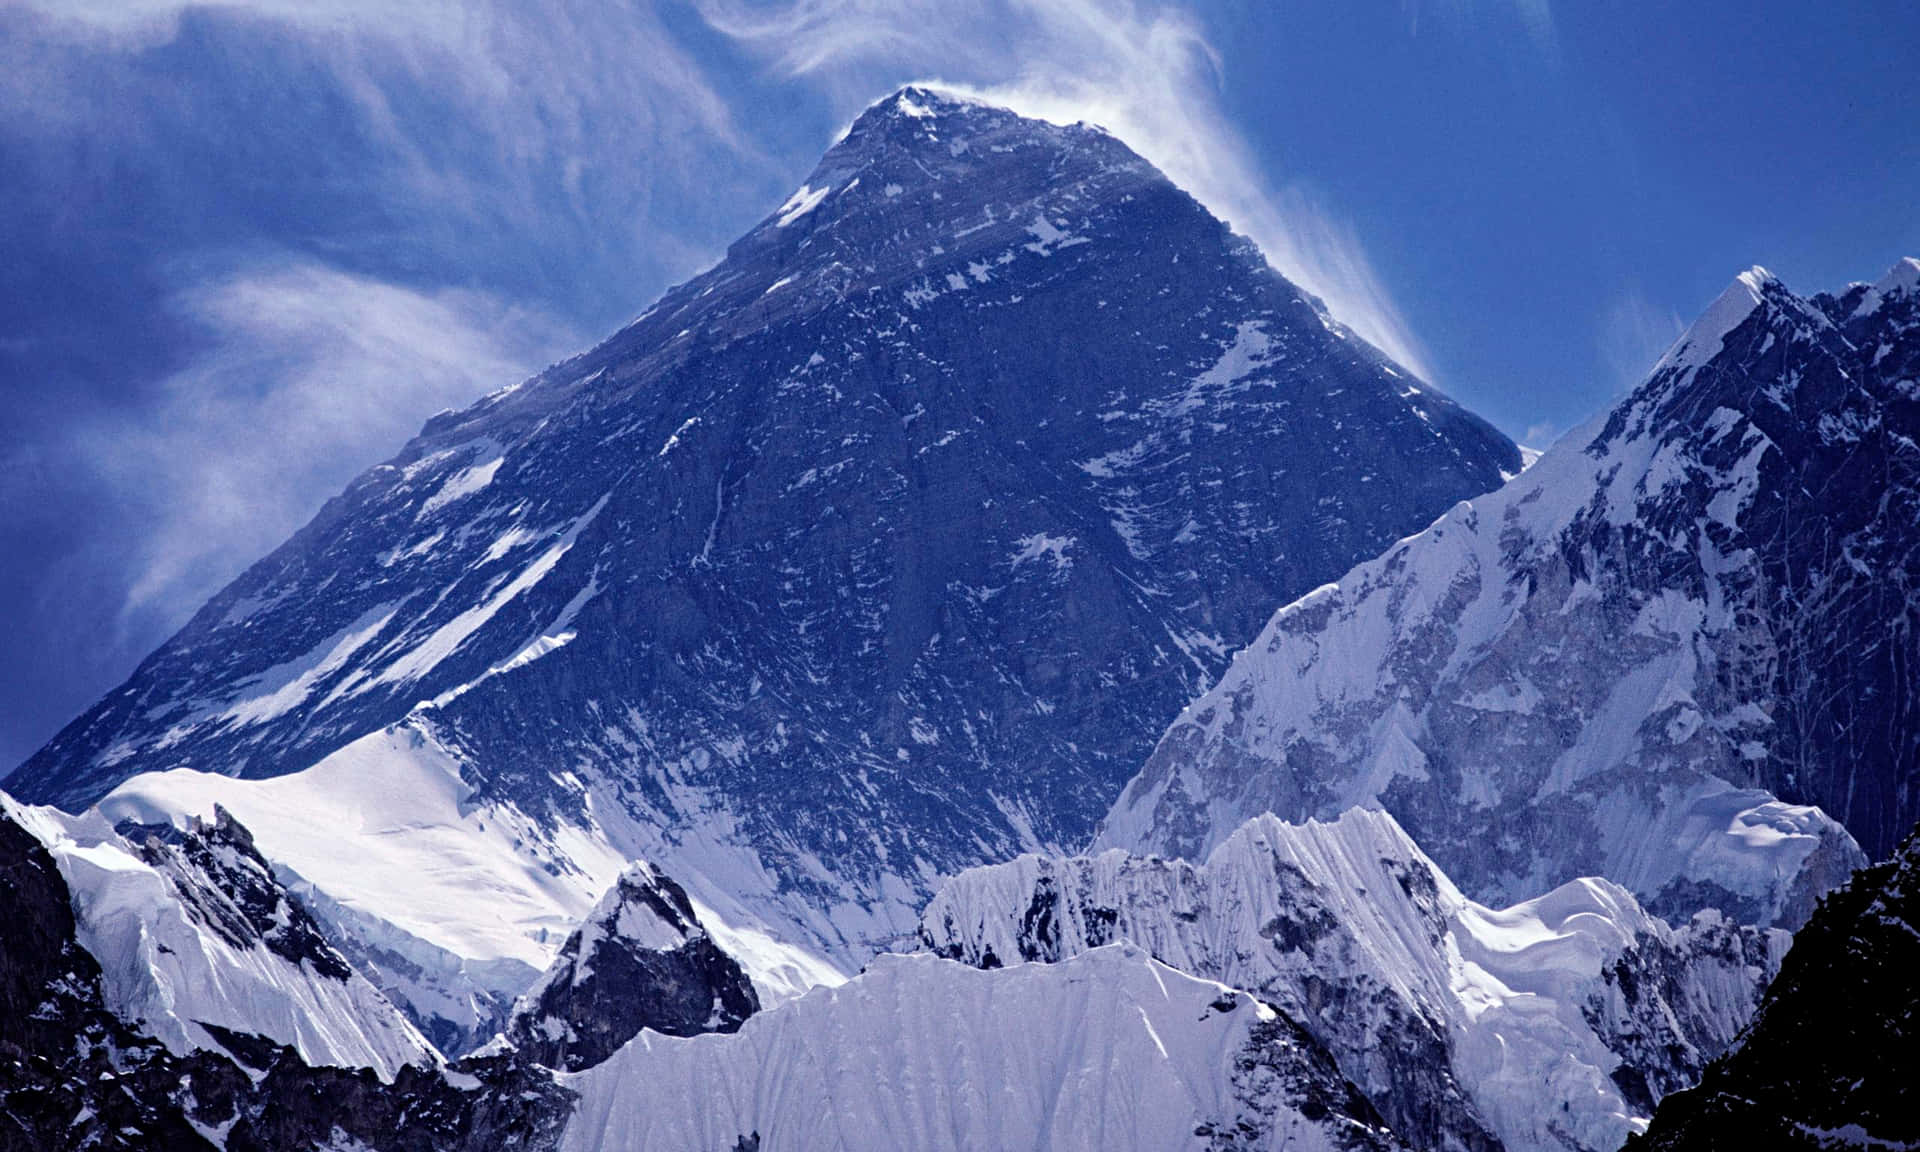 Njutav En Hisnande Utsikt Över Majestätiska Mount Everest Som Dator- Eller Mobiltelefonbakgrund.